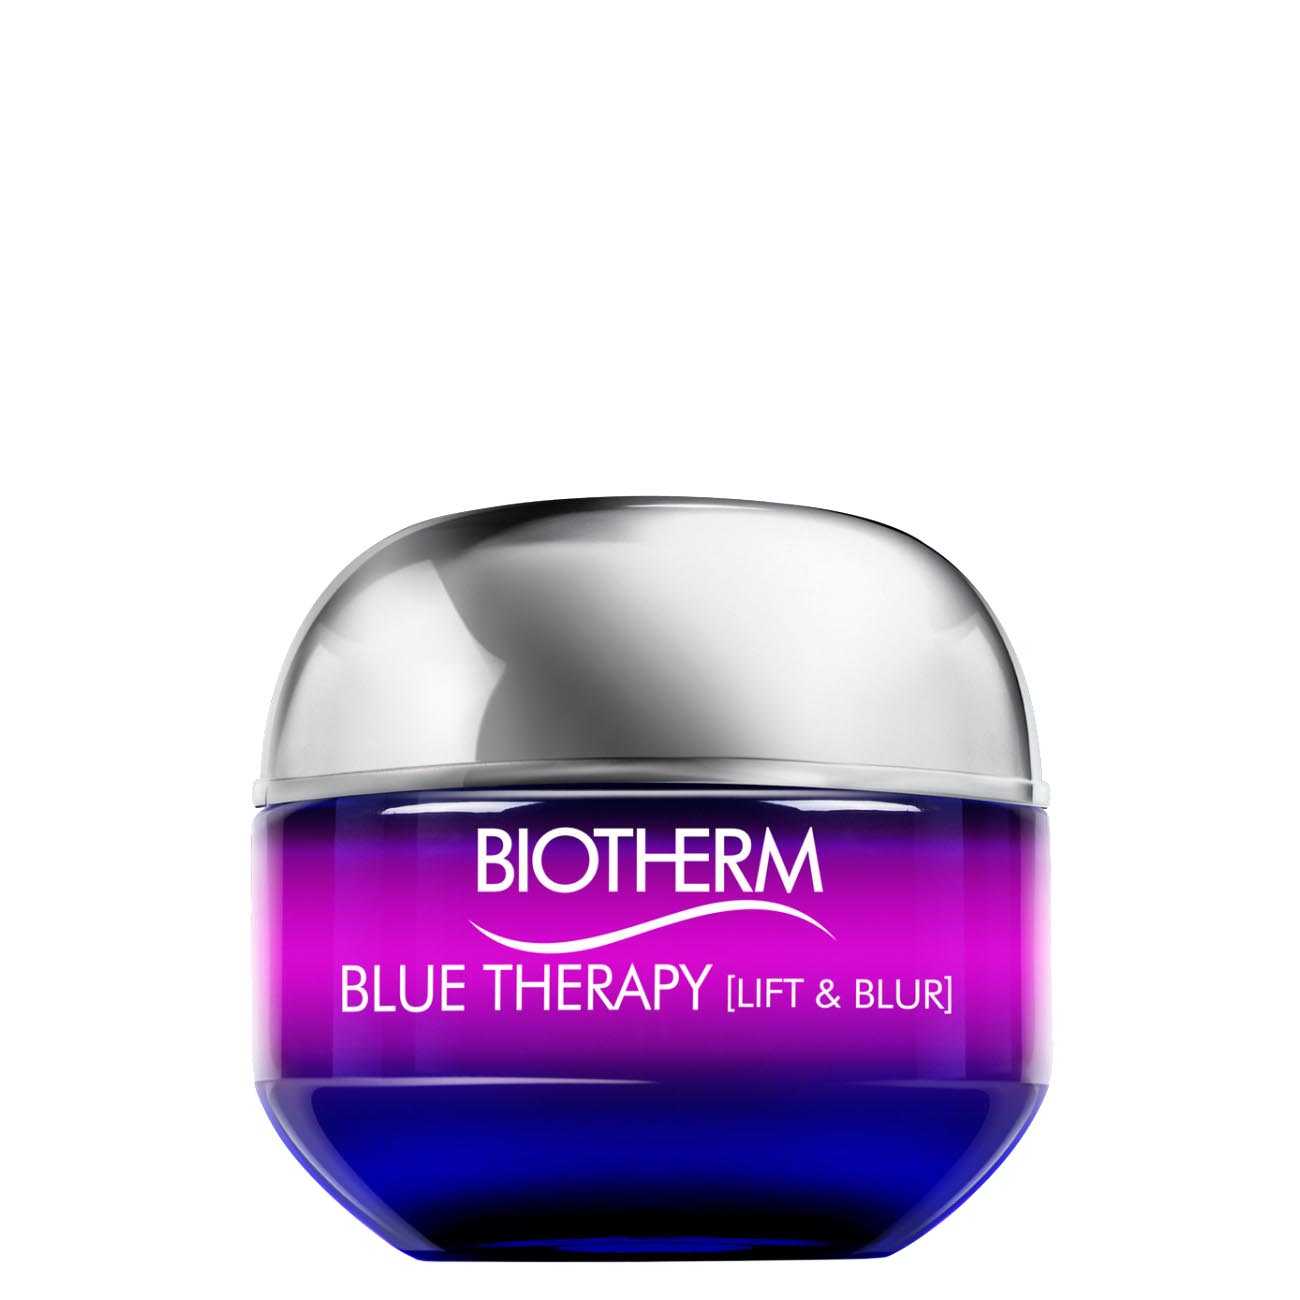 Blue Therapy Lift & Blur 50 Ml Biotherm imagine 2021 bestvalue.eu